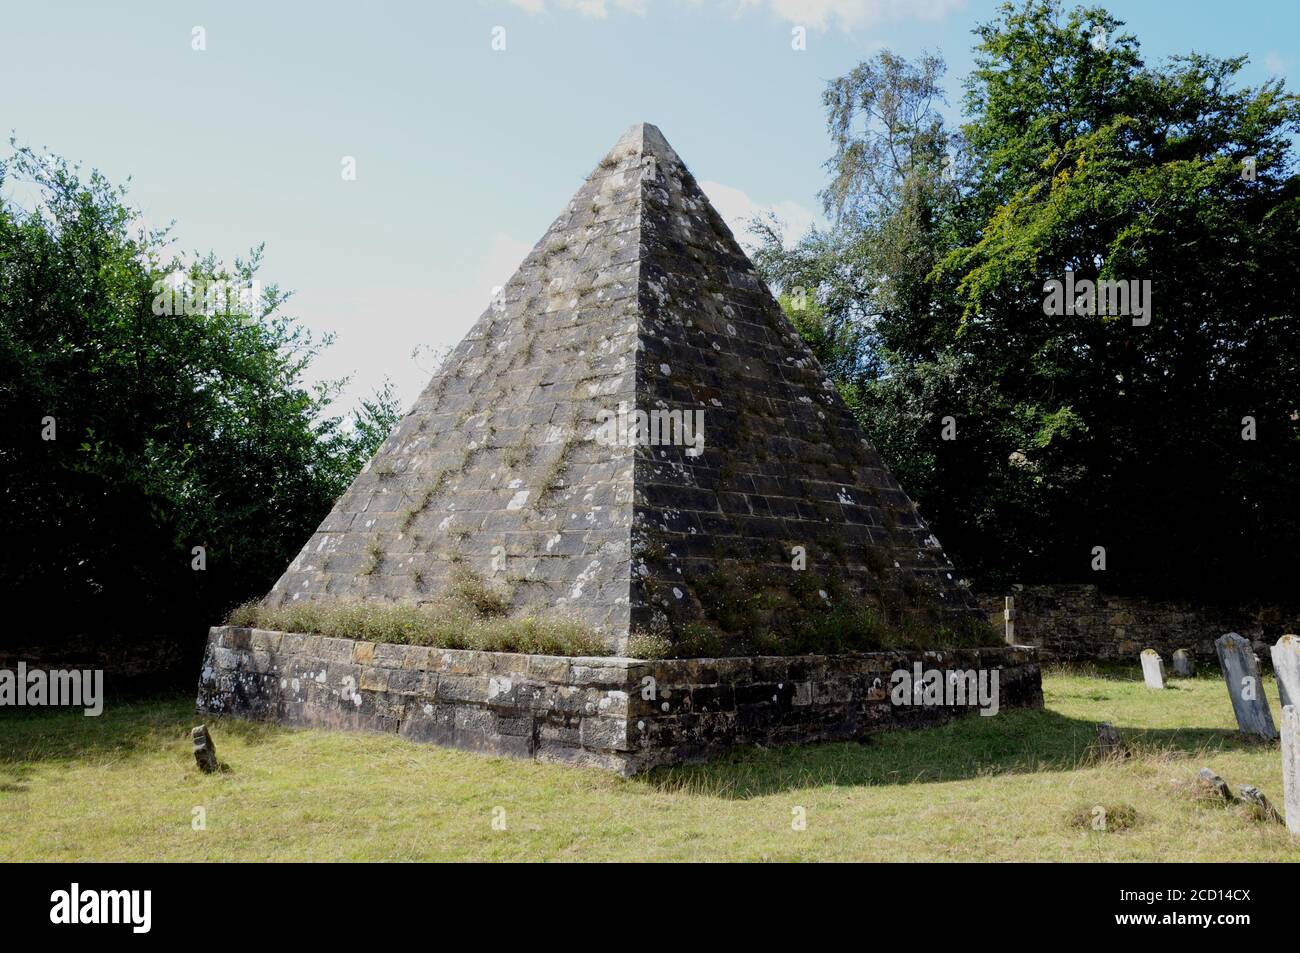 La pyramide de 25 pieds de haut se dresse dans le cimetière de l'église de Brightling, East Sussex, le dernier lieu de repos de John 'Mad Jack' Fuller MP. Banque D'Images